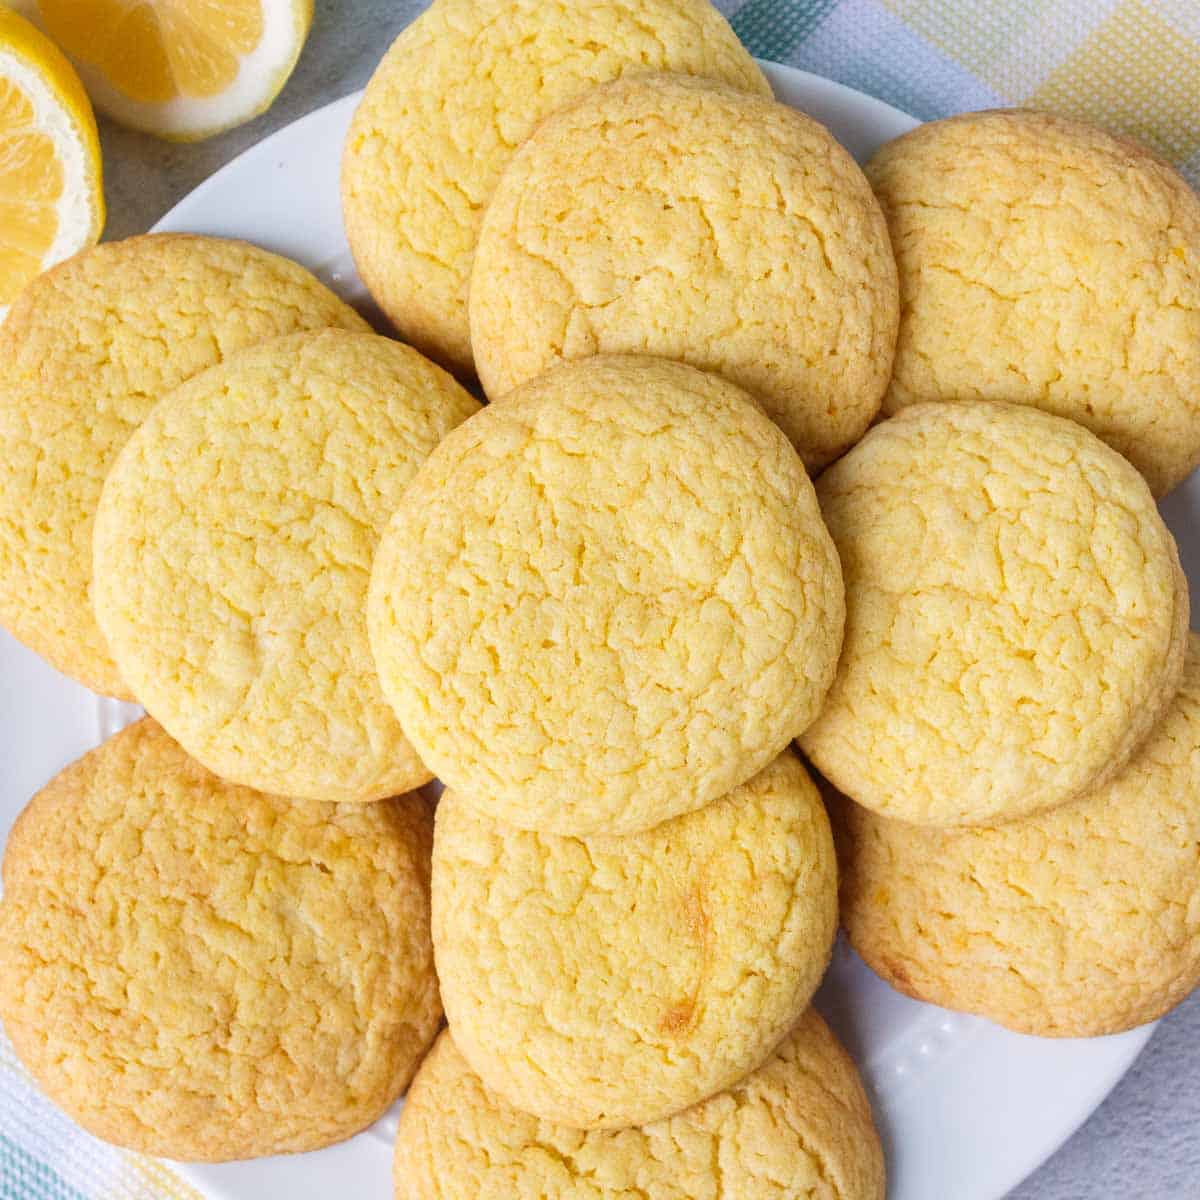 3-Ingredient Lemon Cake Mix Cookies